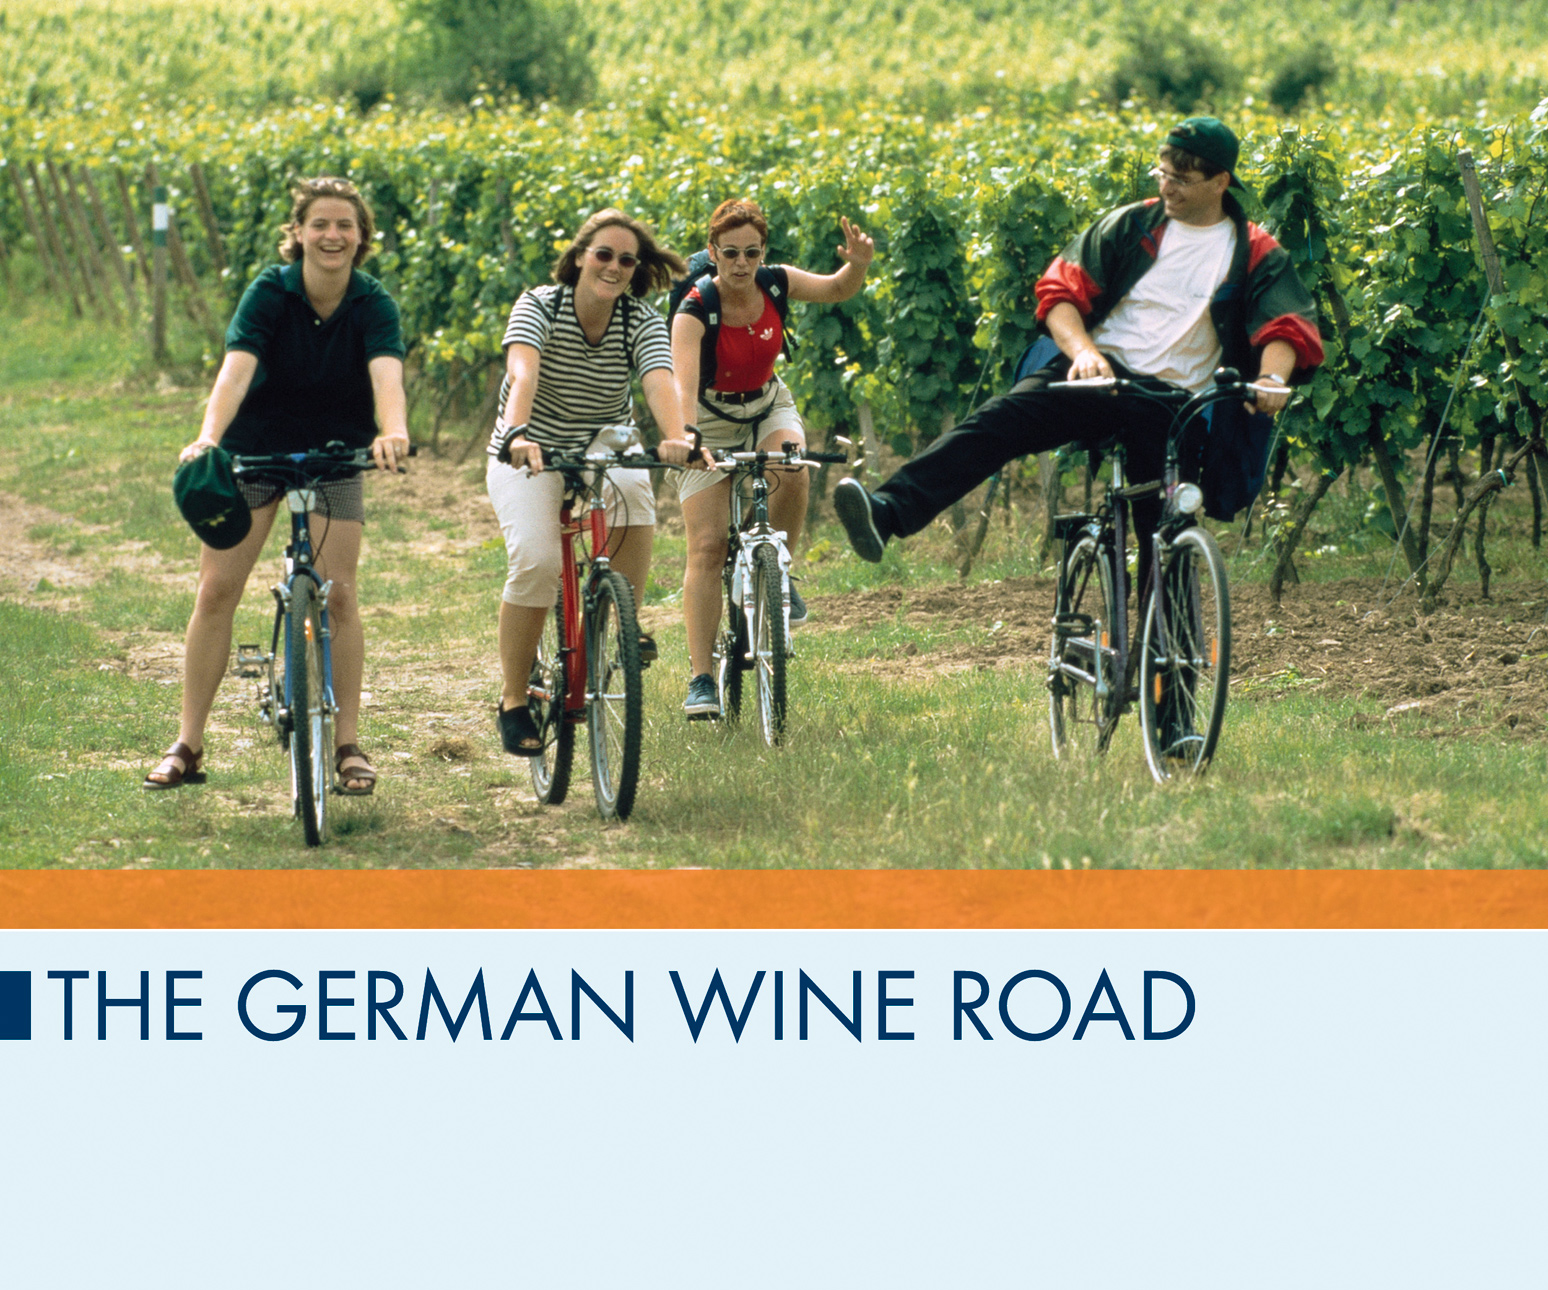 The German Wine Road